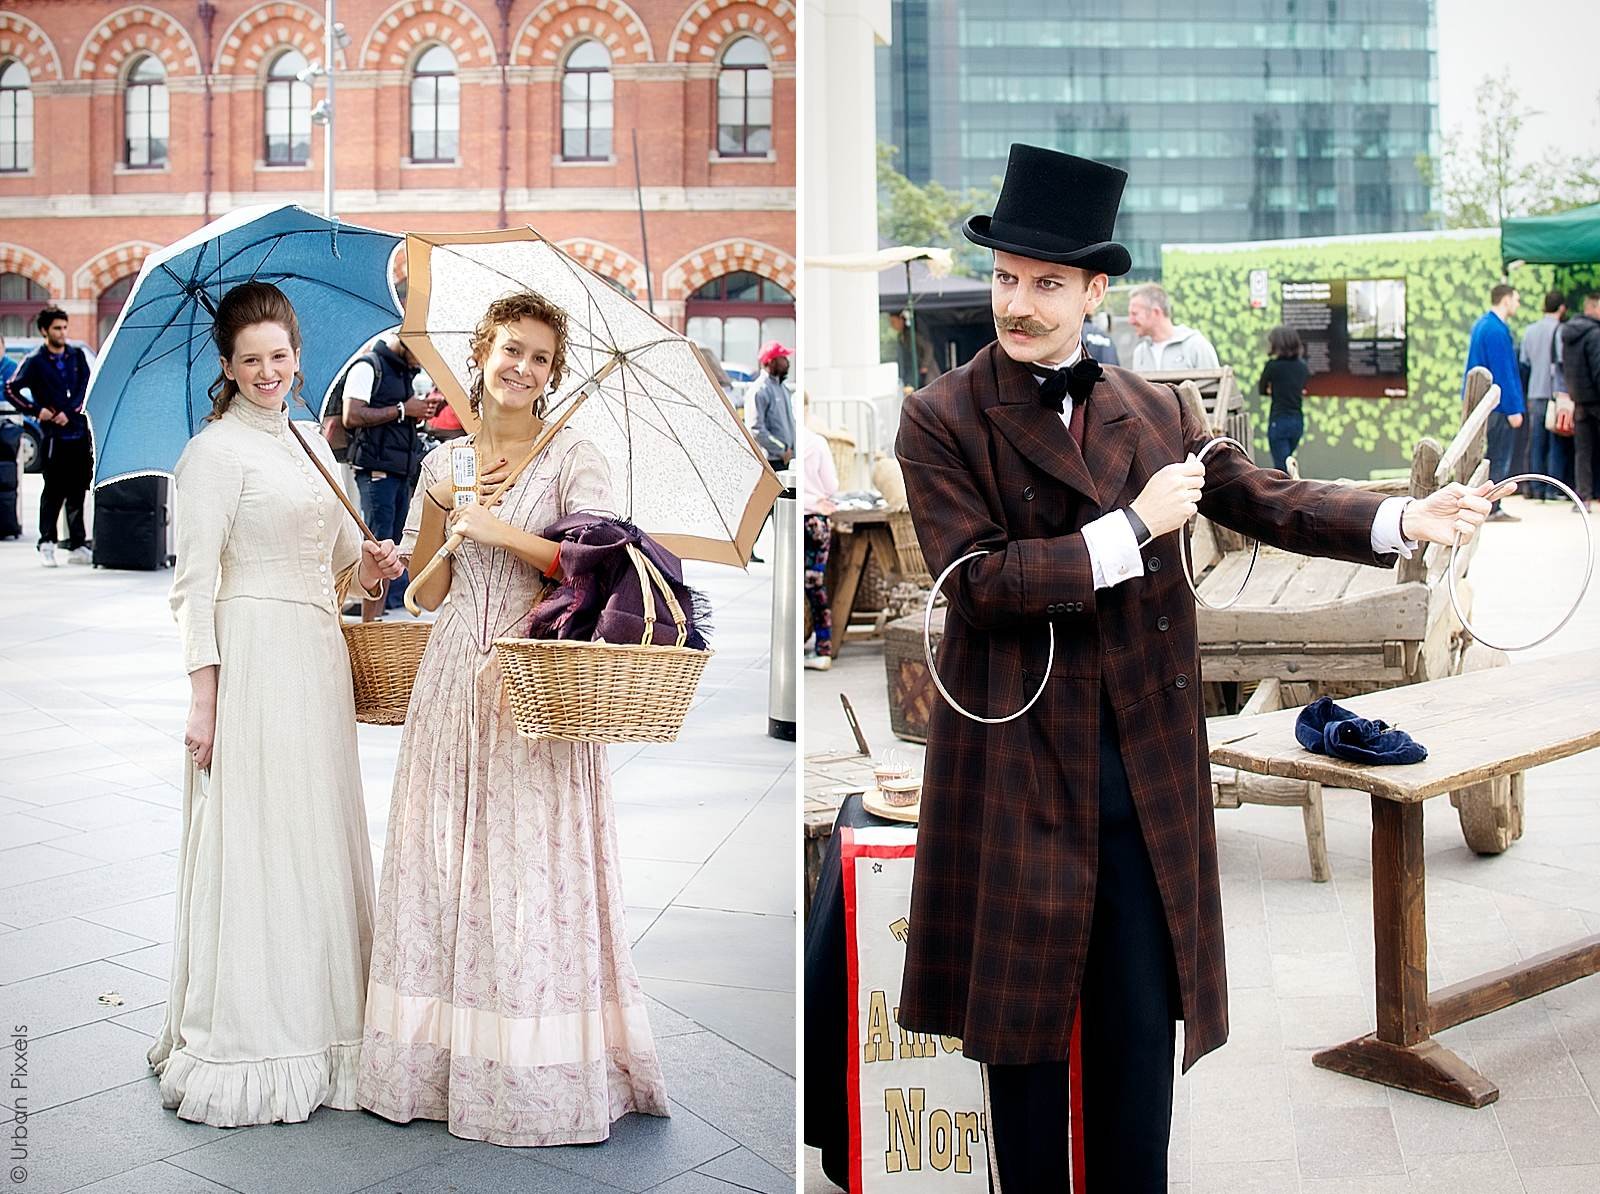 Women in Victorian dresses history King's Cross London